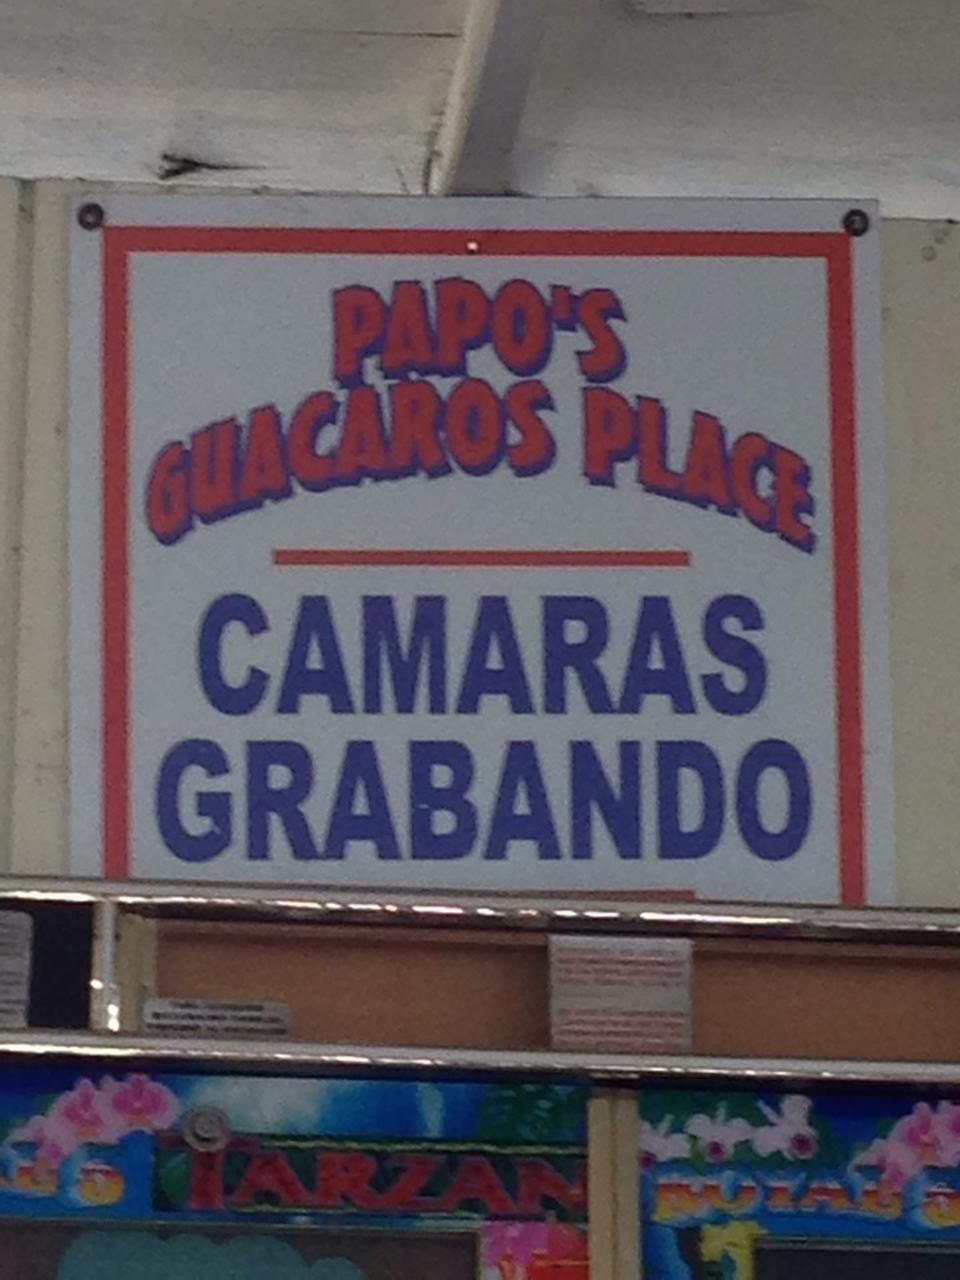 Guacaro’s Place